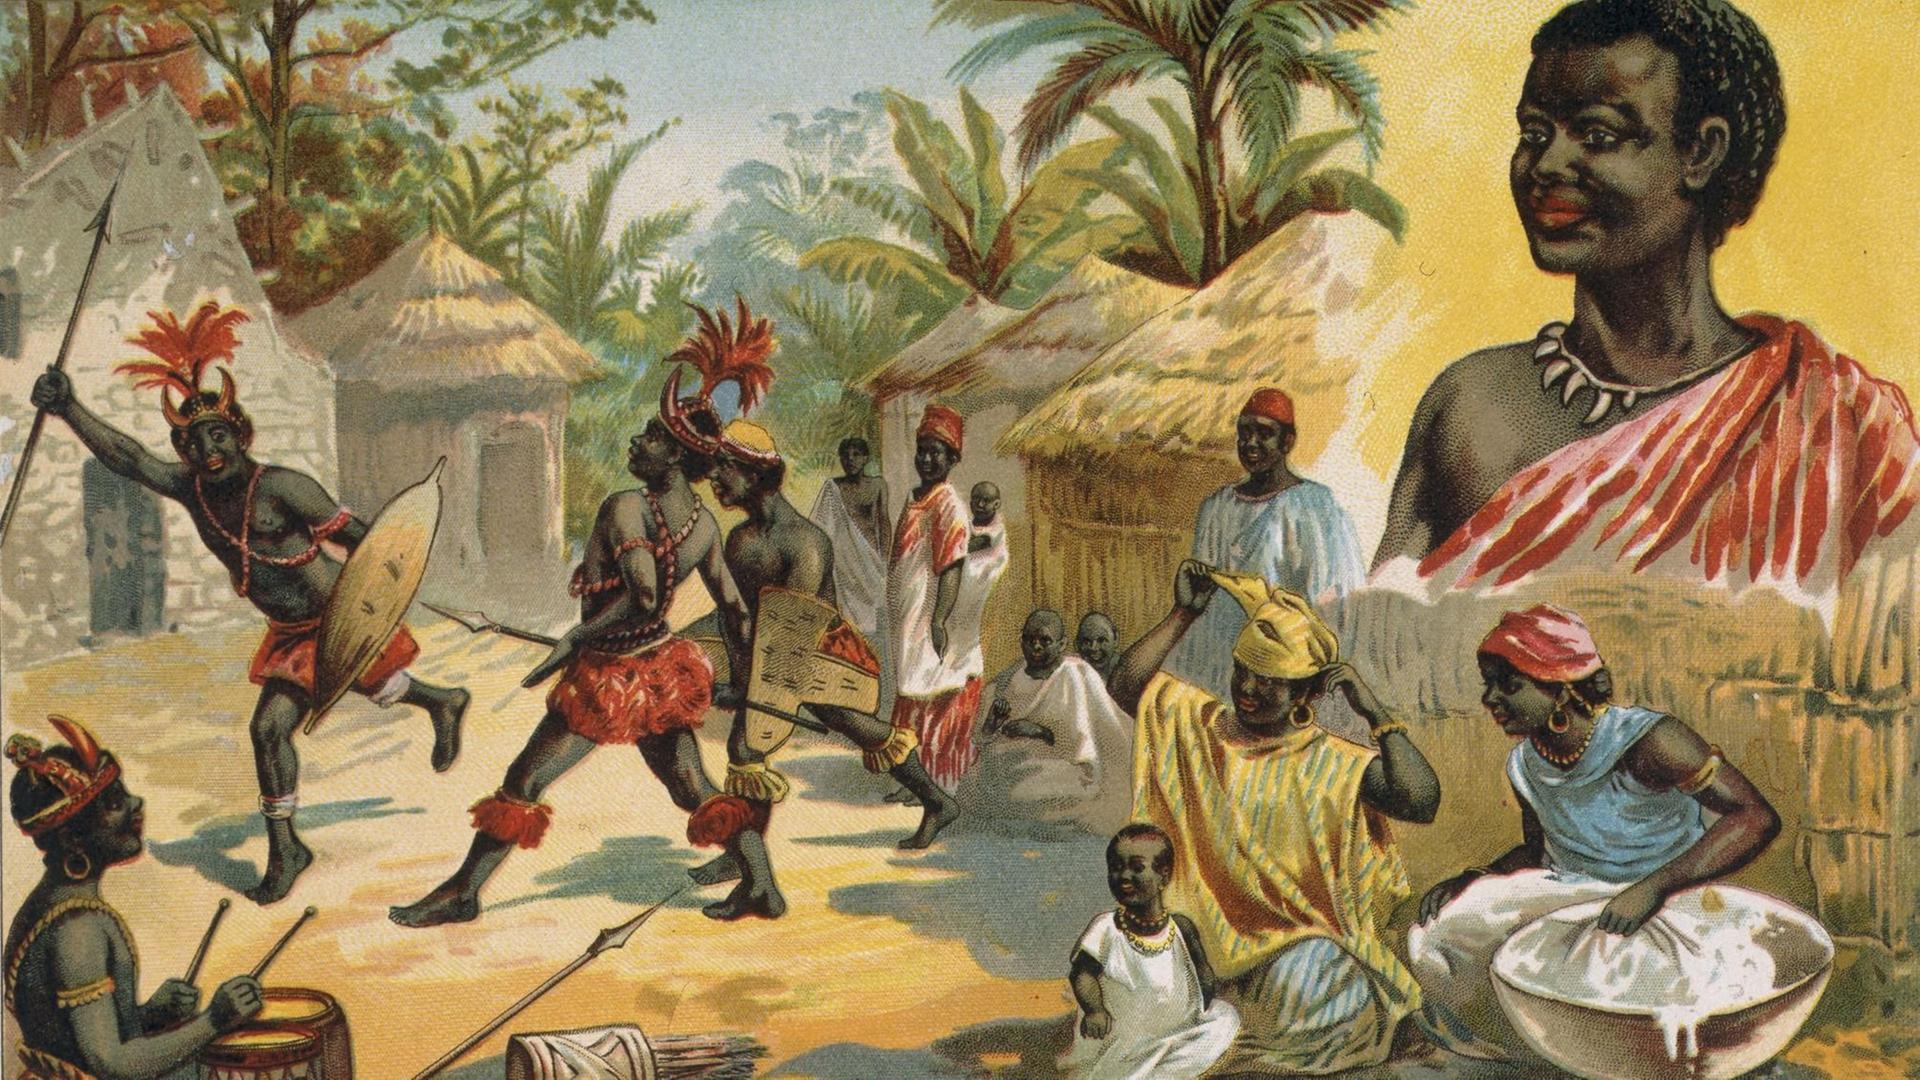 Farblithographie von der Vorstellung eines afrikanischen Stammes